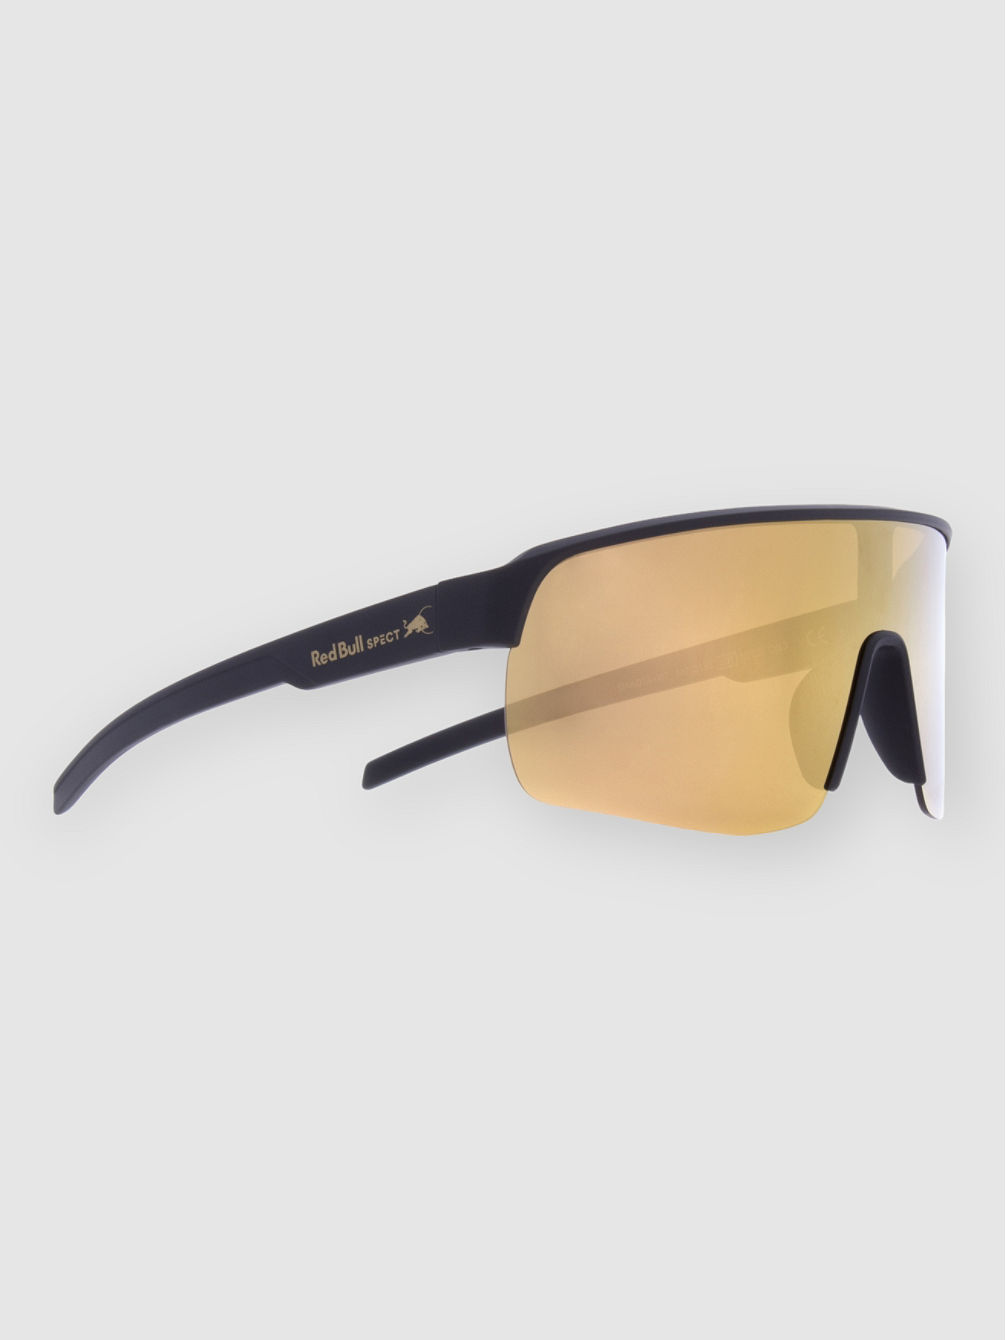 DAKOTA-007 Black Sunglasses